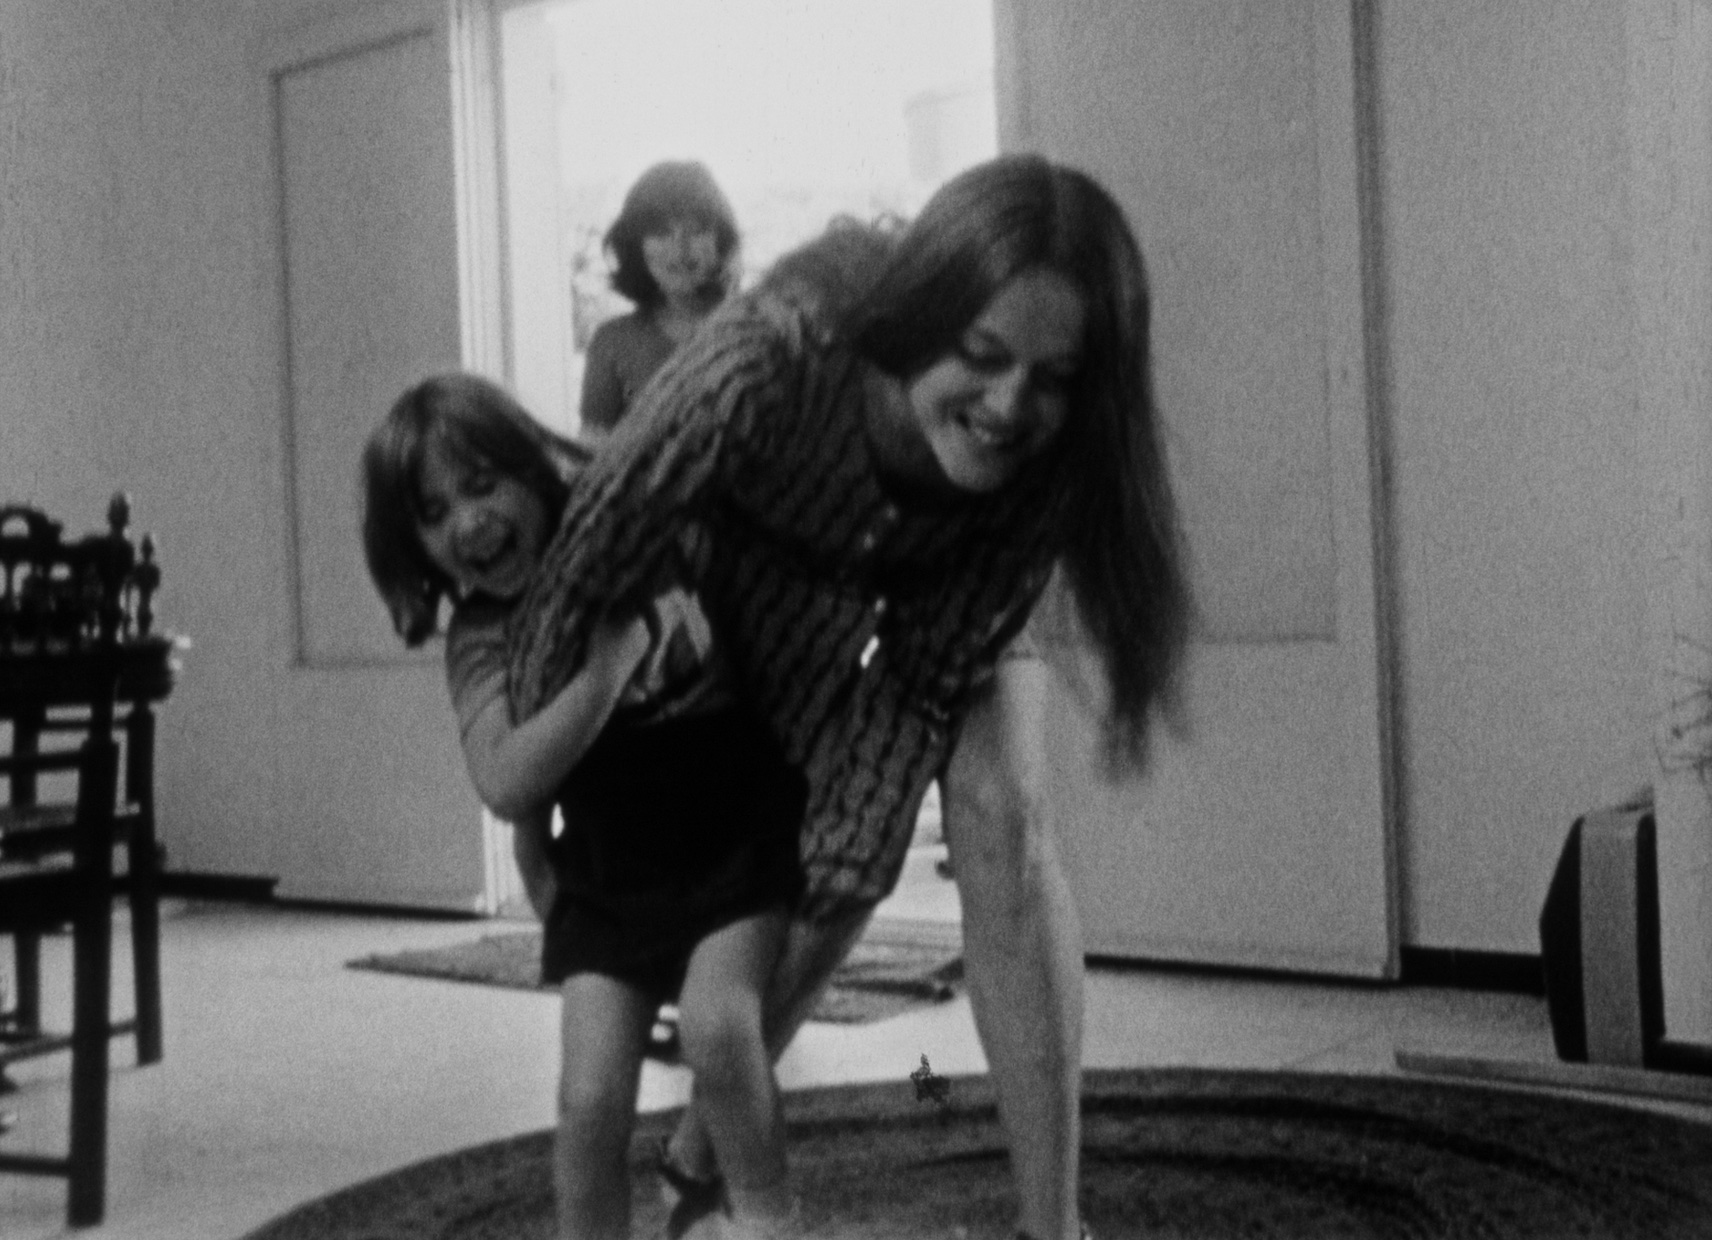 (2) L’enfant aimé ou je joue à être une femme mariée (Chantal Akerman, 1971)